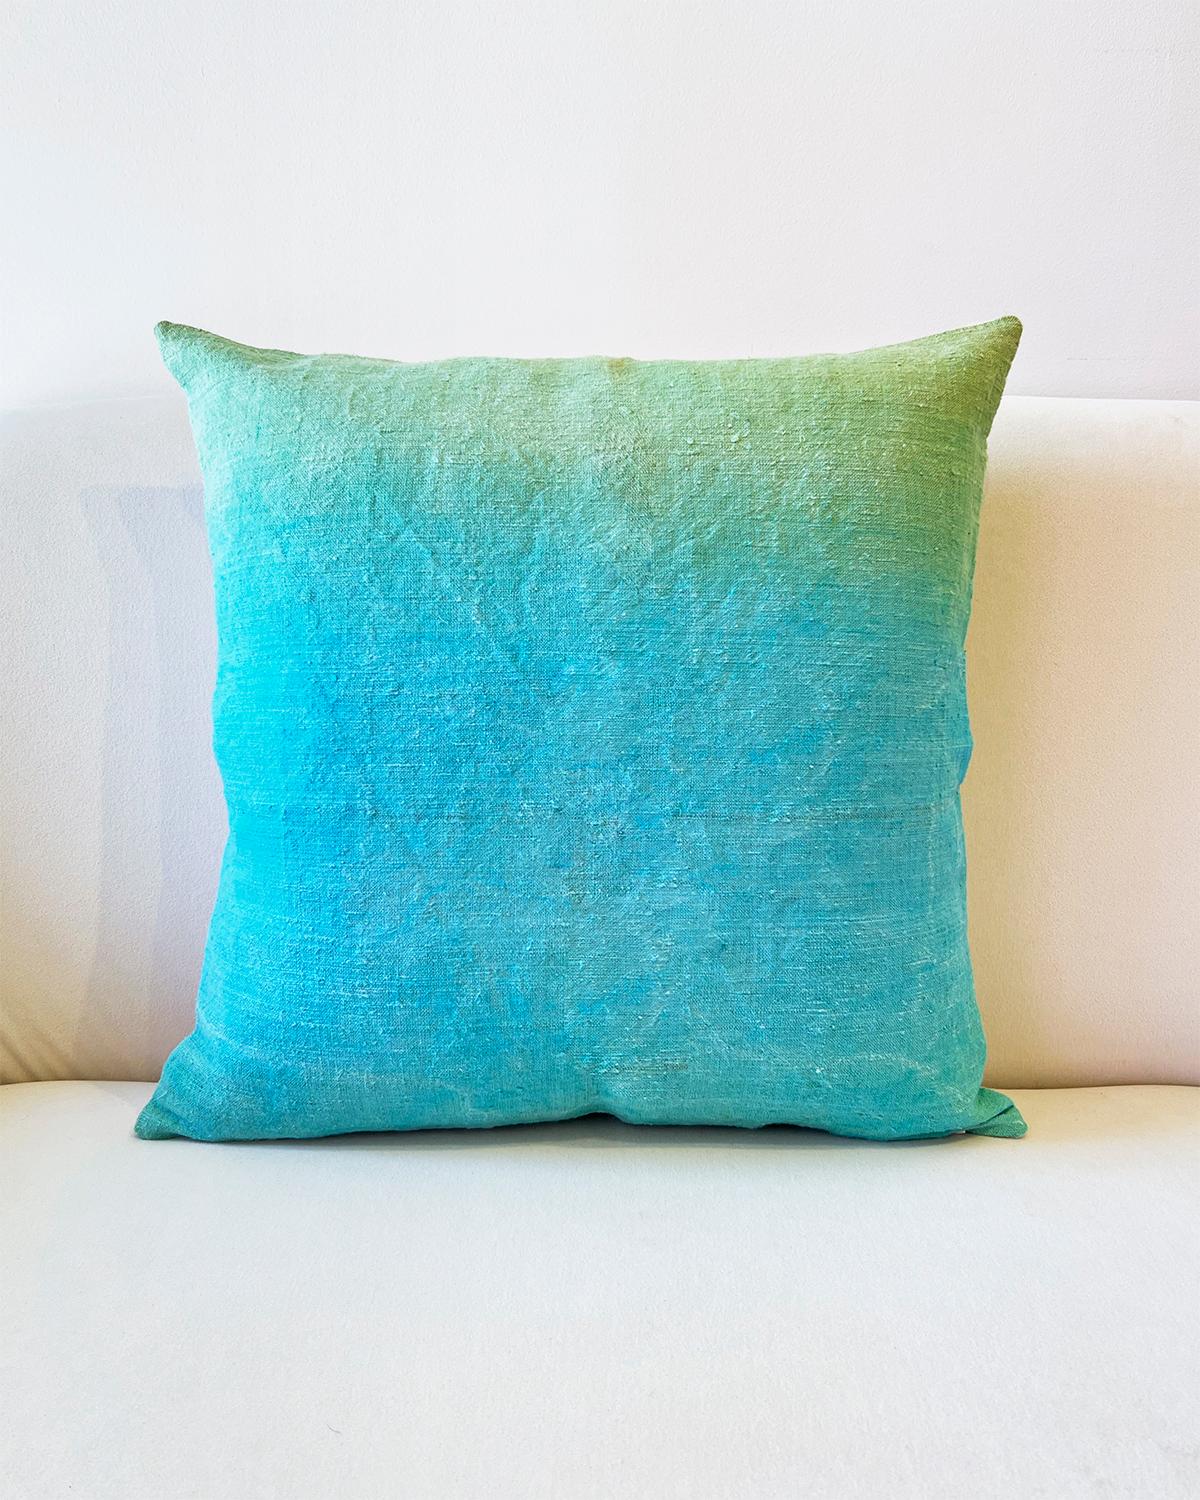 Contemporary Espanyolet Aqua Ombre Hand-Painted Vintage Linen Pillow 20